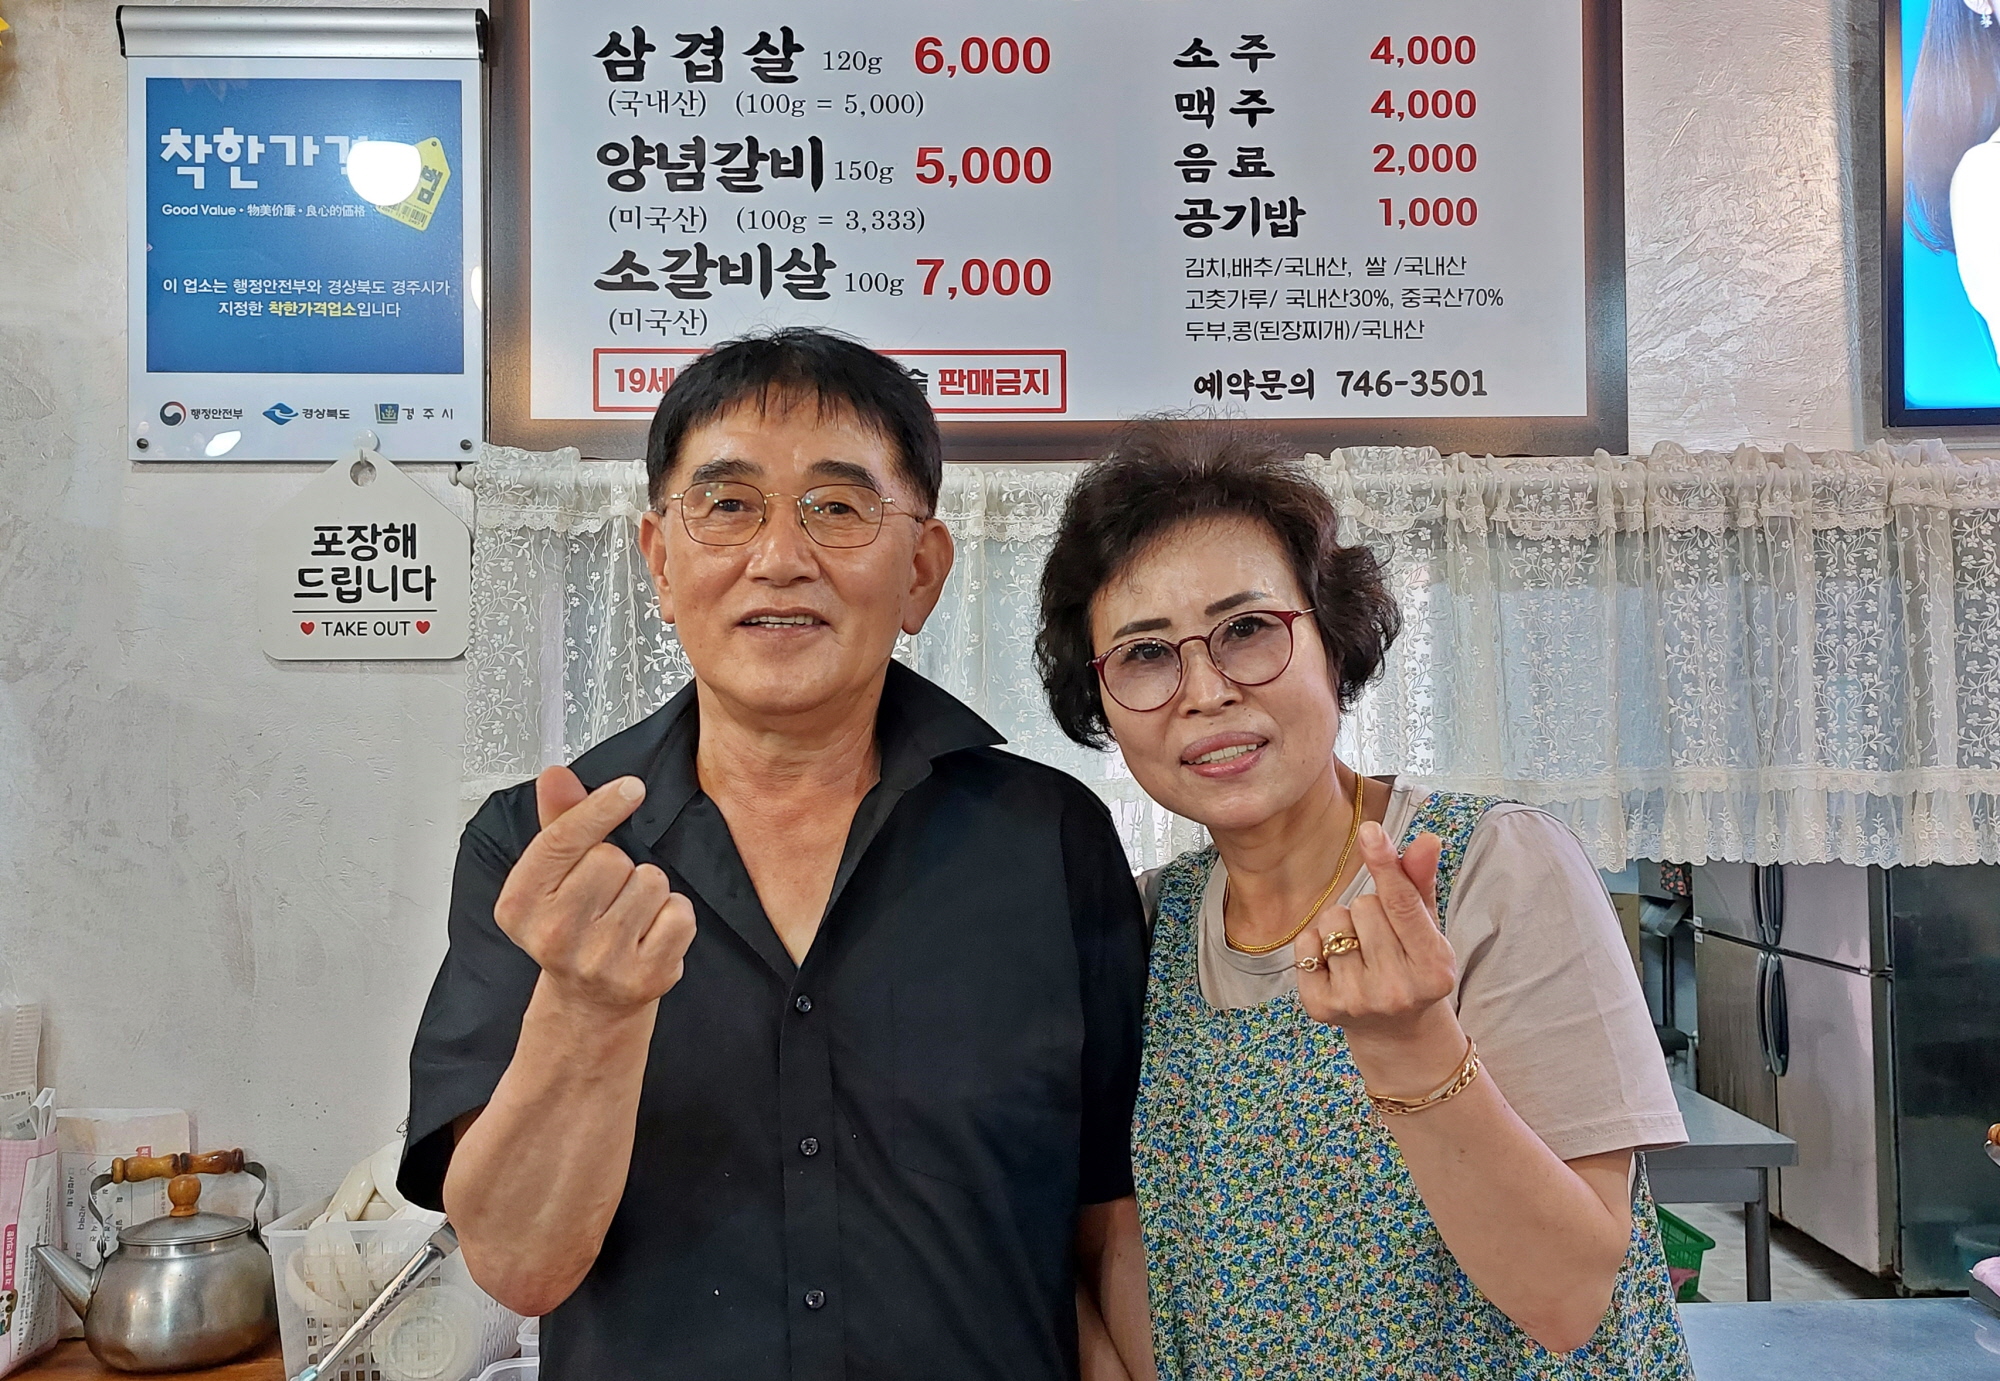 착한가격업소로 지정된 모량숯불갈비 강경태·박정옥 대표